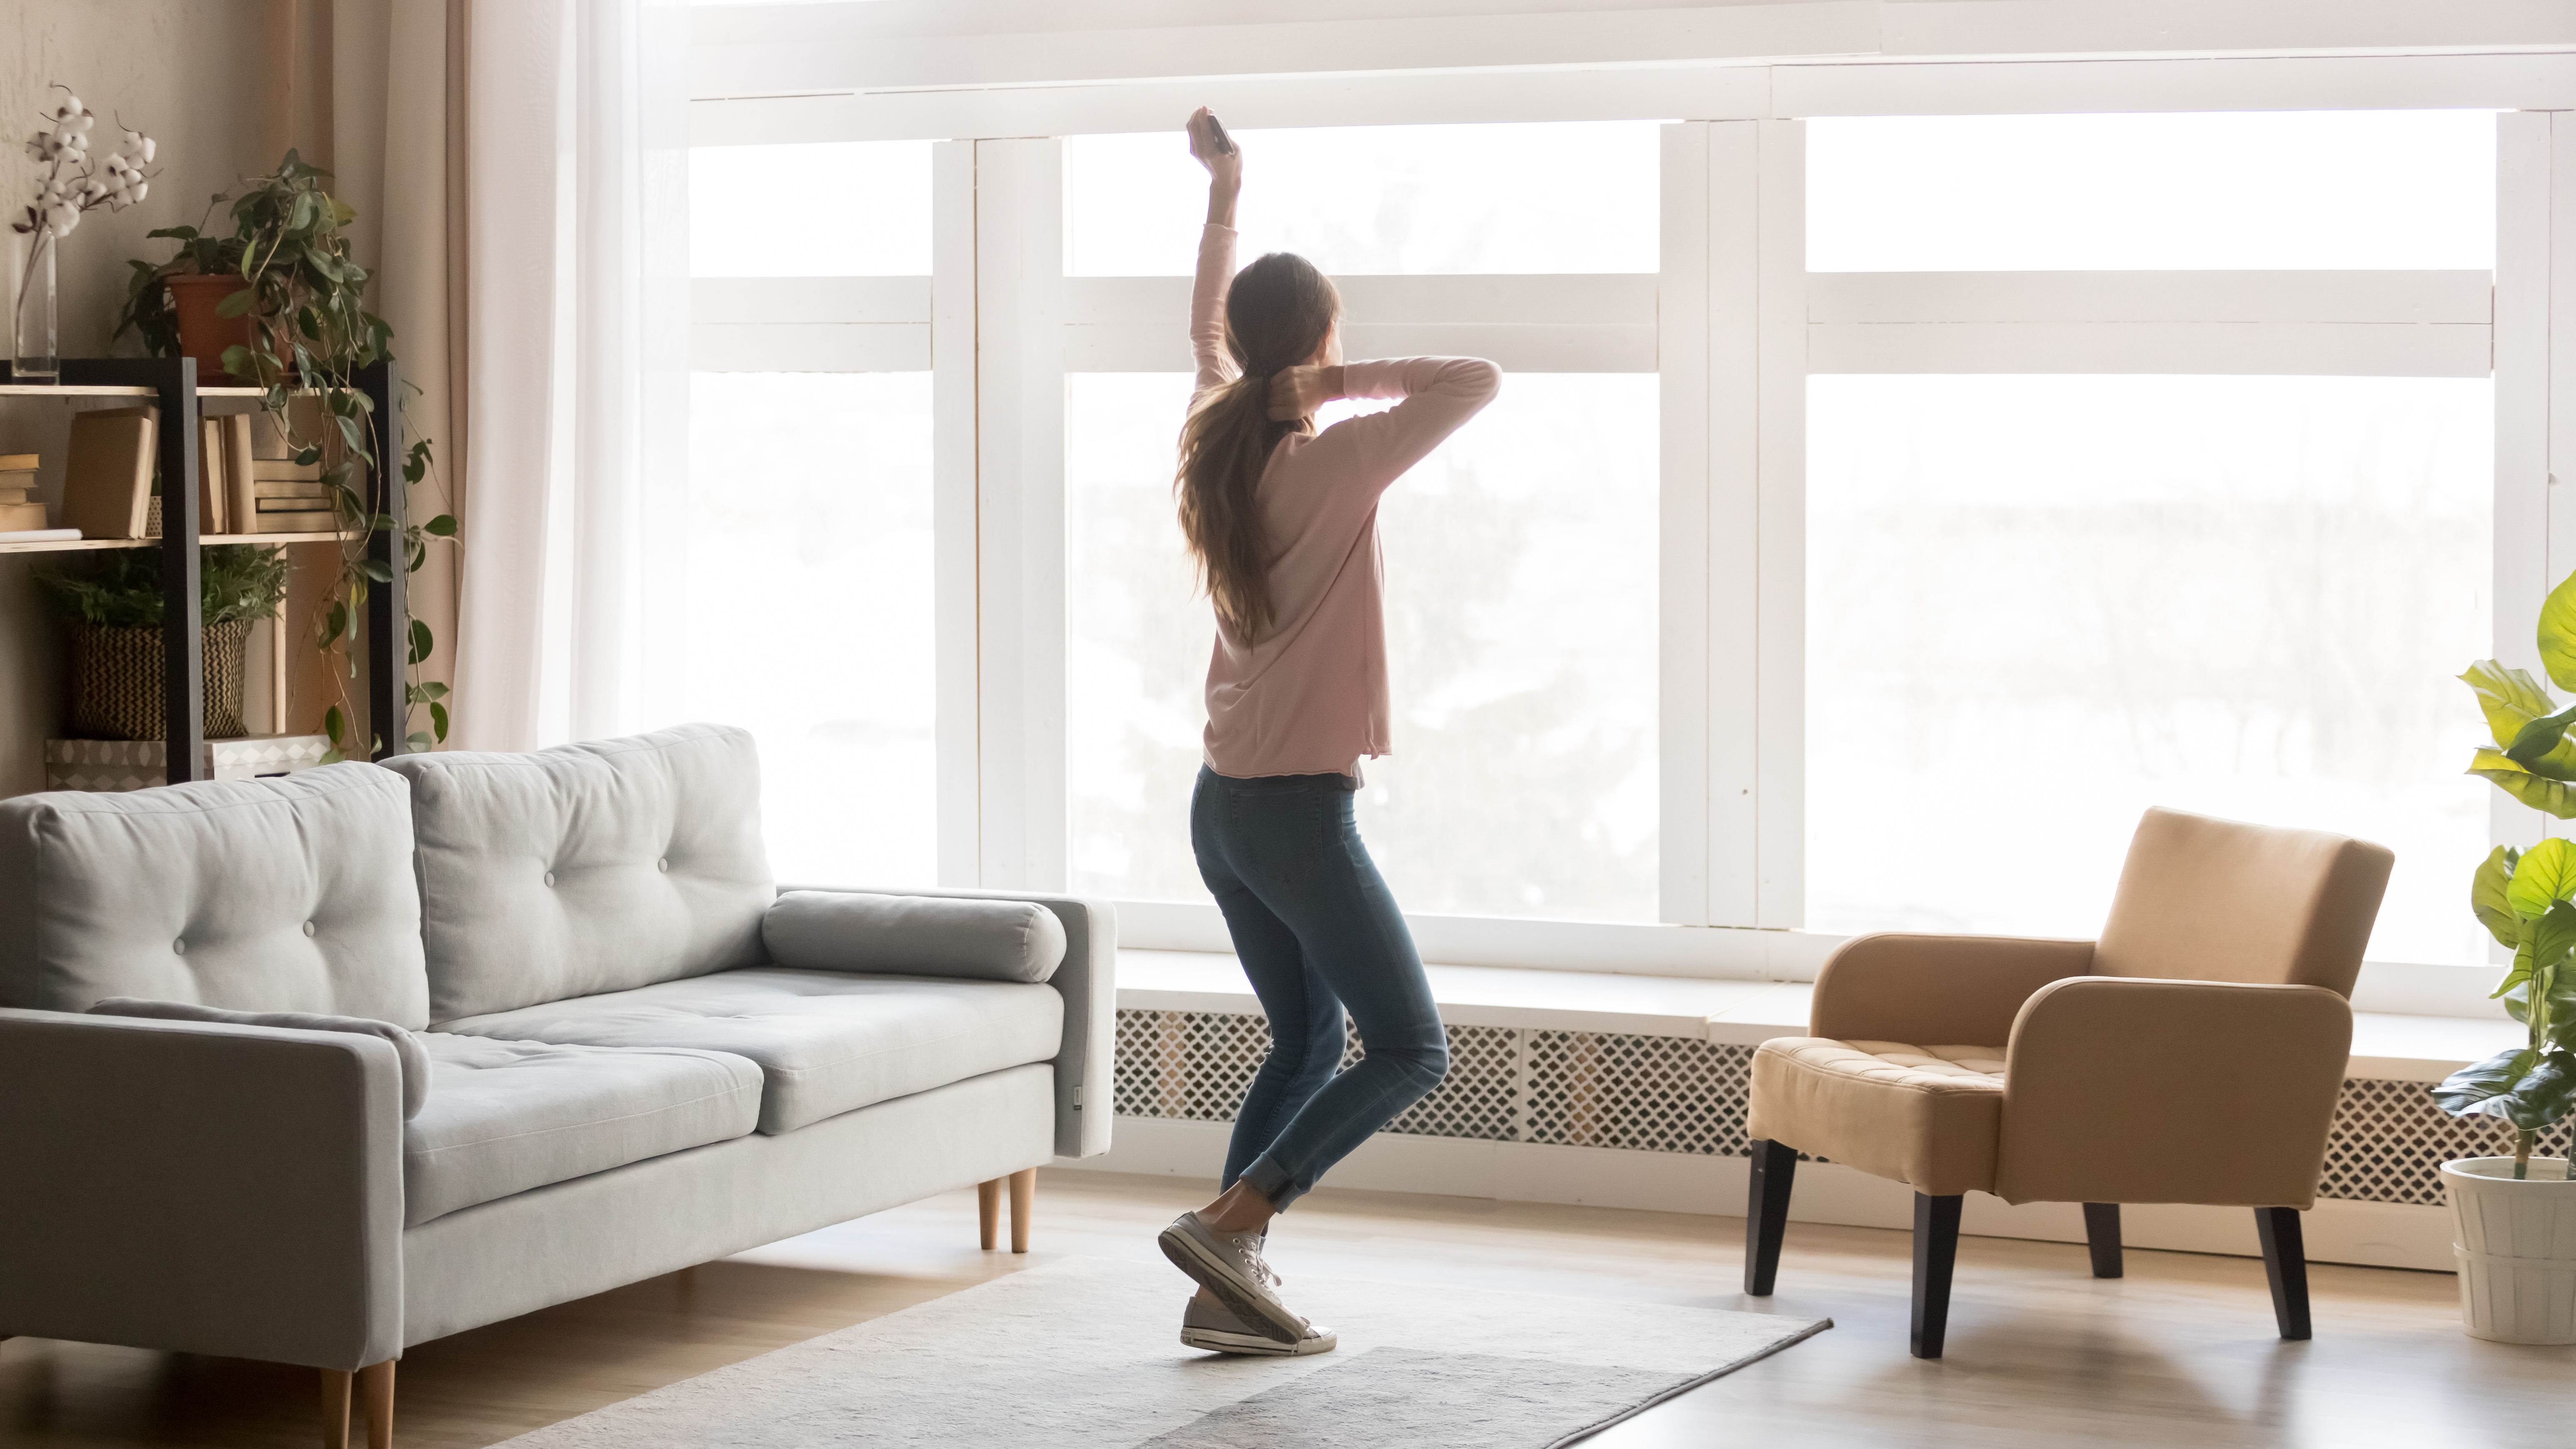 Une femme qui danse dans une nouvelle maison | Source : Shutterstock